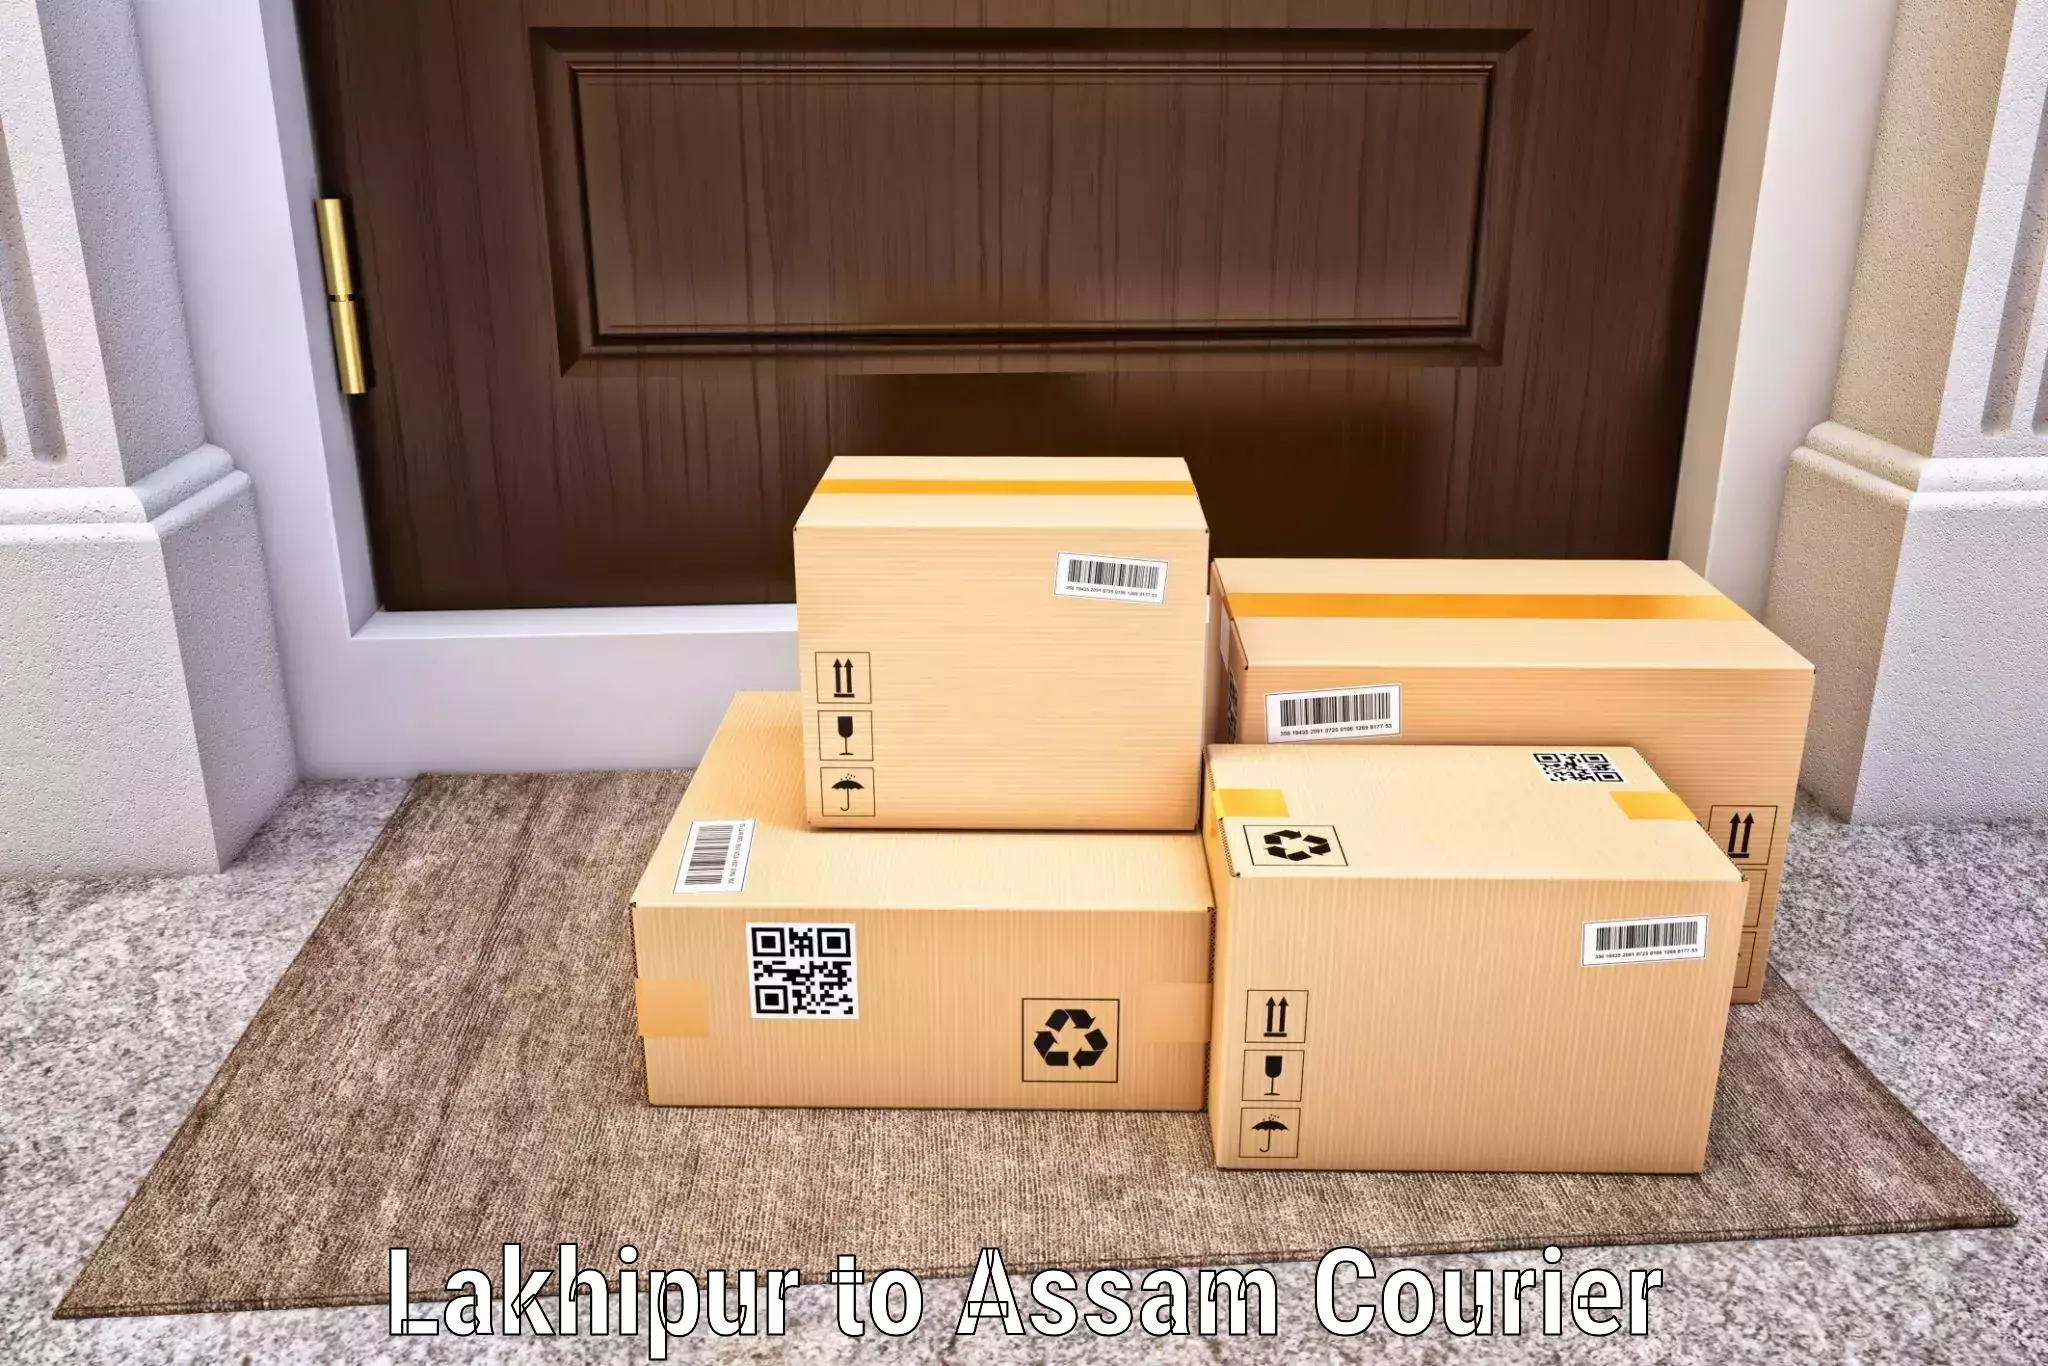 Quality courier partnerships Lakhipur to Mangaldoi